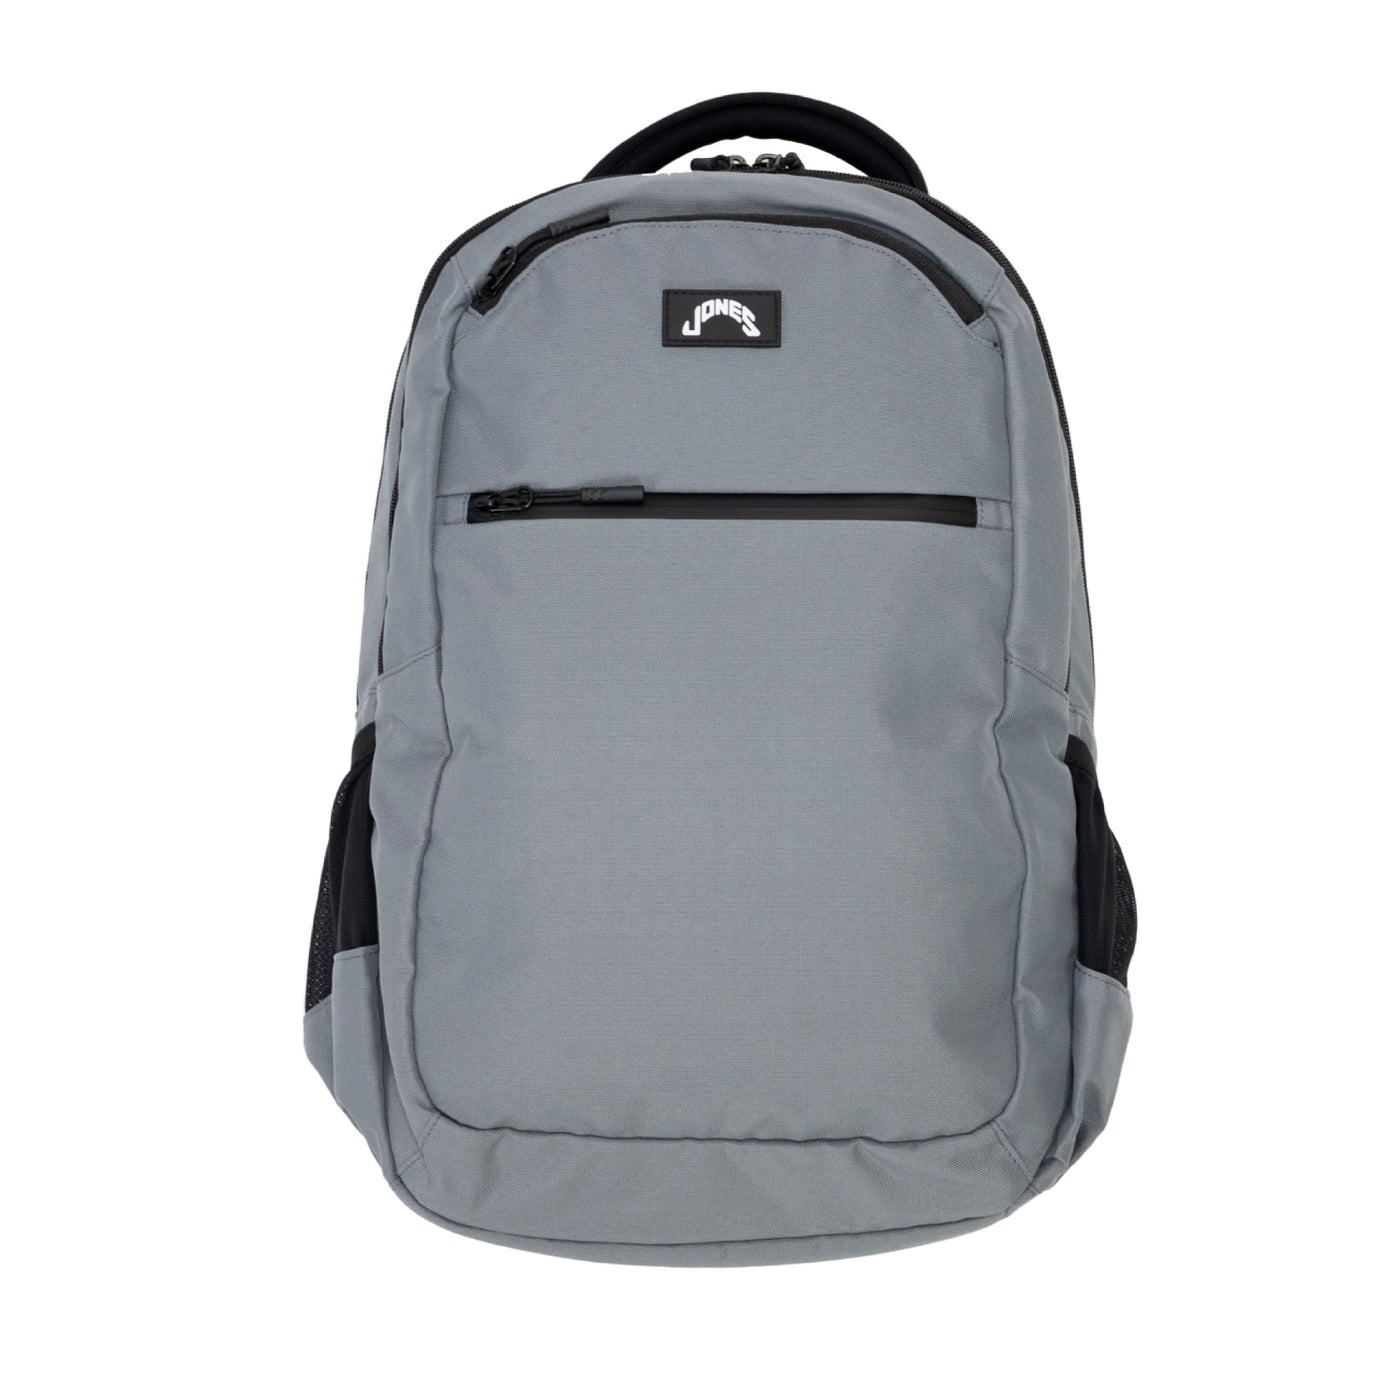 Jones A1 Backpack - Midtown Gray